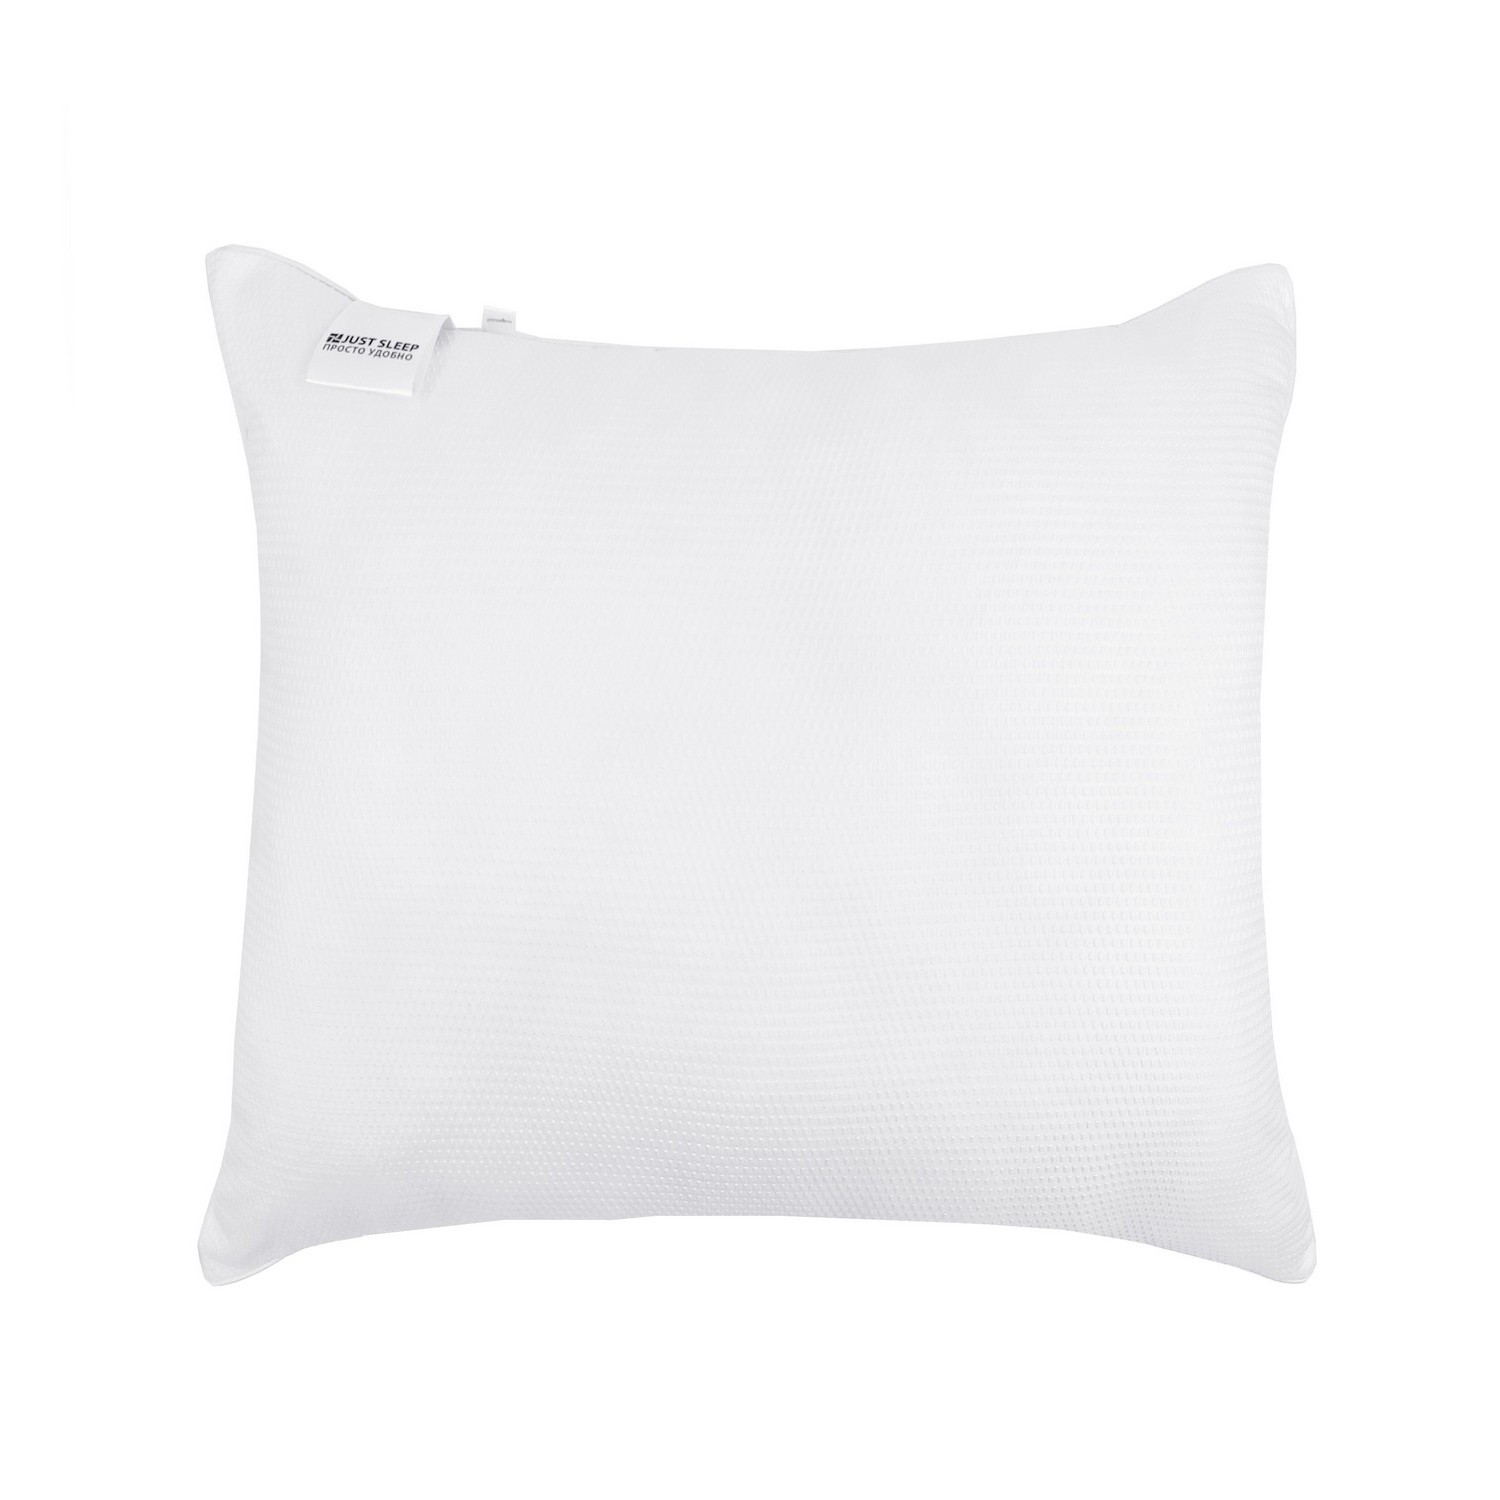 Подушка Средняя Relax цвет: белый (68х68), размер 68х68 jsl882874 Подушка Средняя Relax цвет: белый (68х68) - фото 1